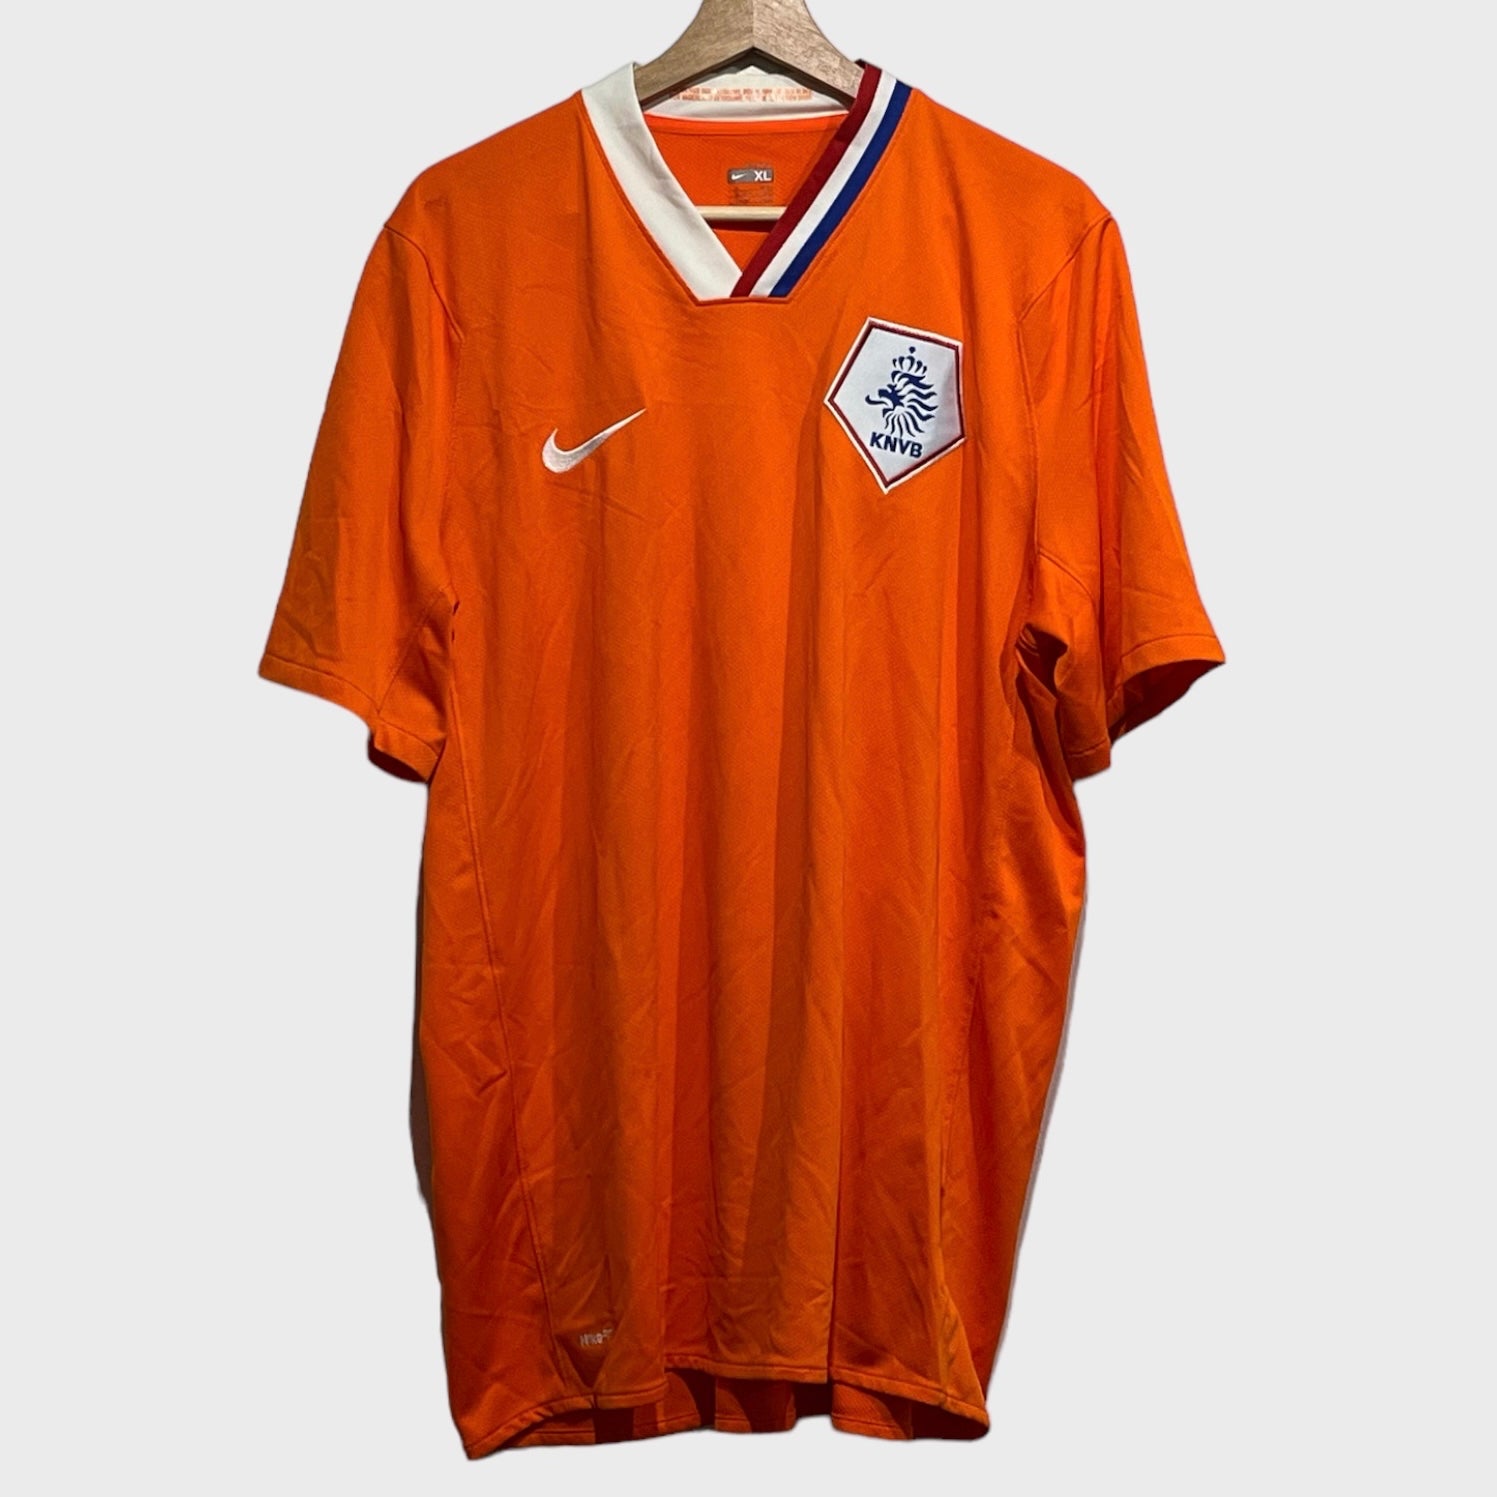 2008/10 Holland Netherlands Home Soccer Jersey XL